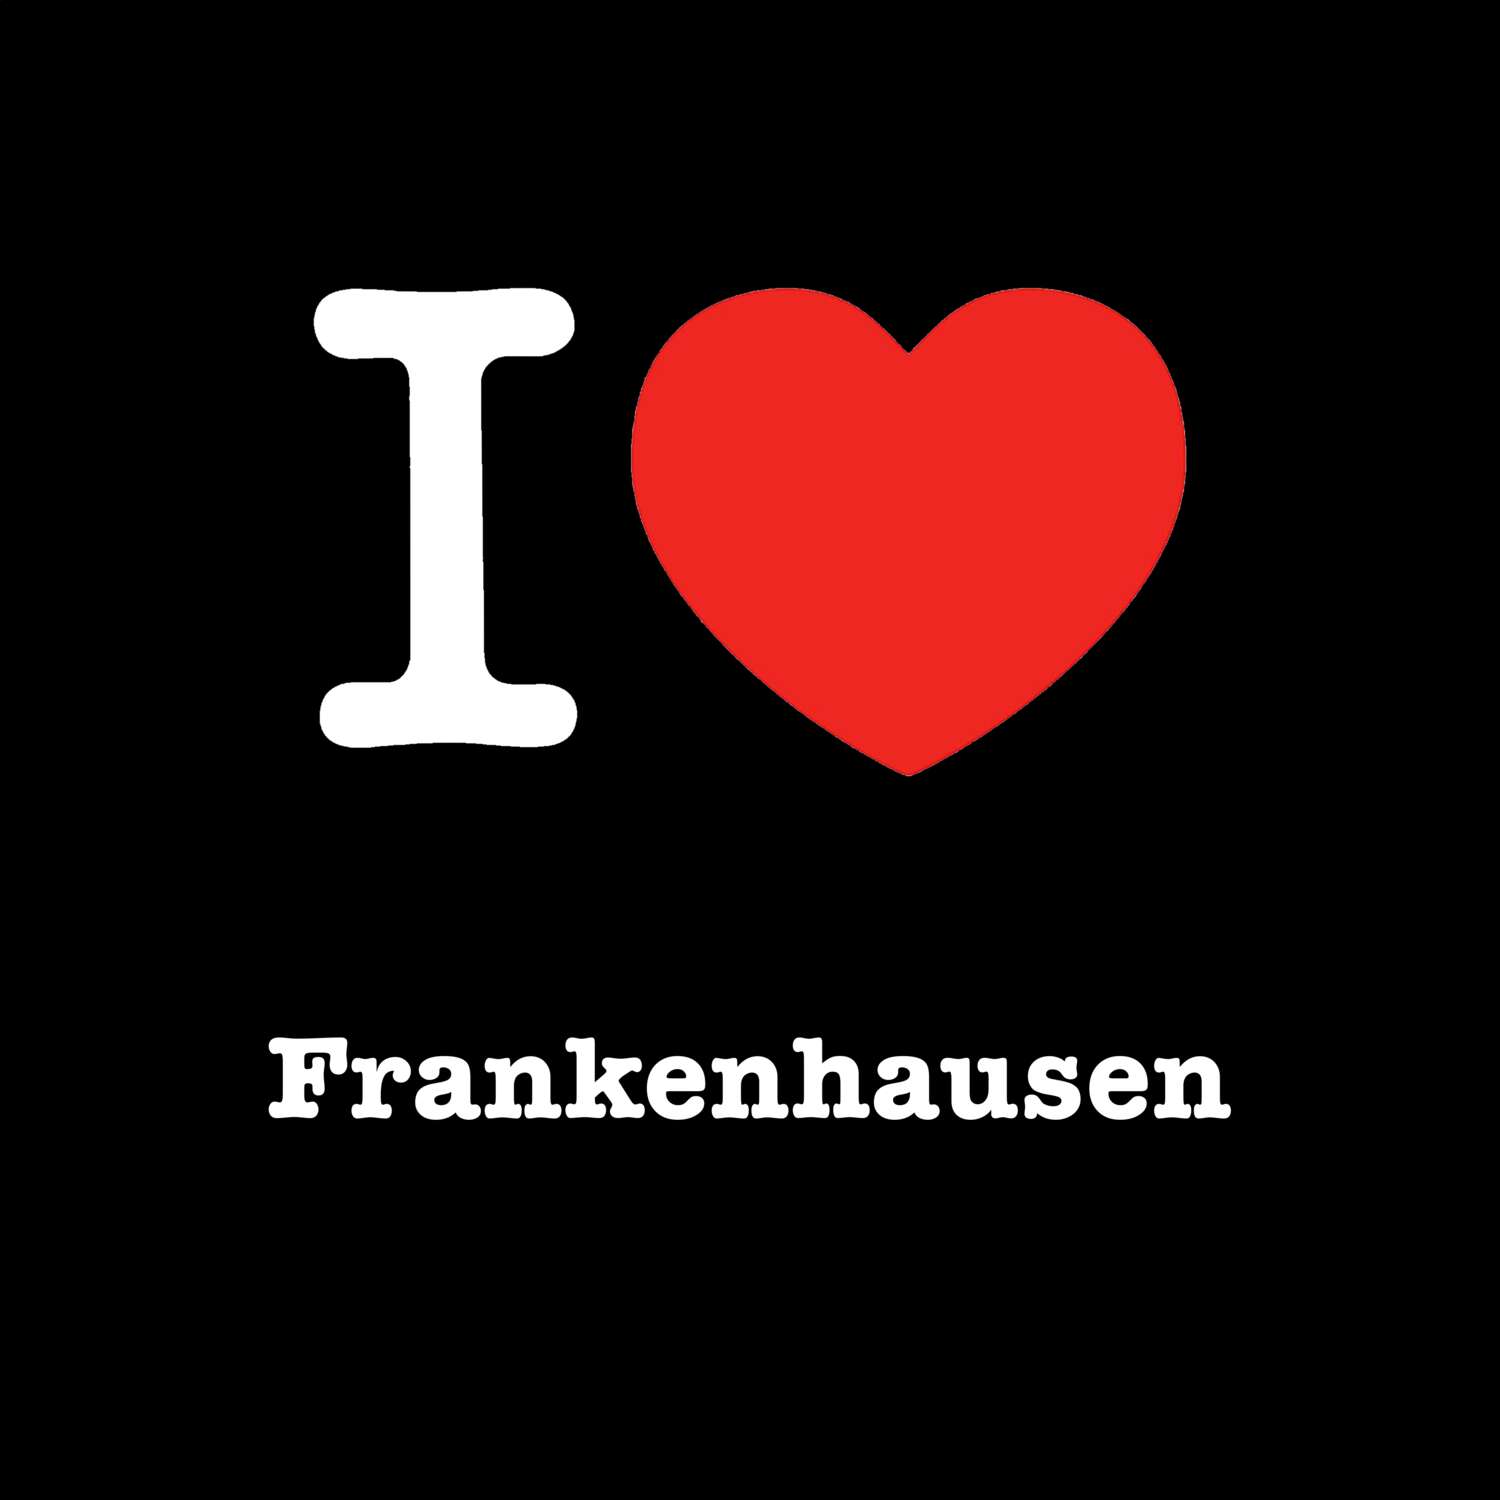 Frankenhausen T-Shirt »I love«